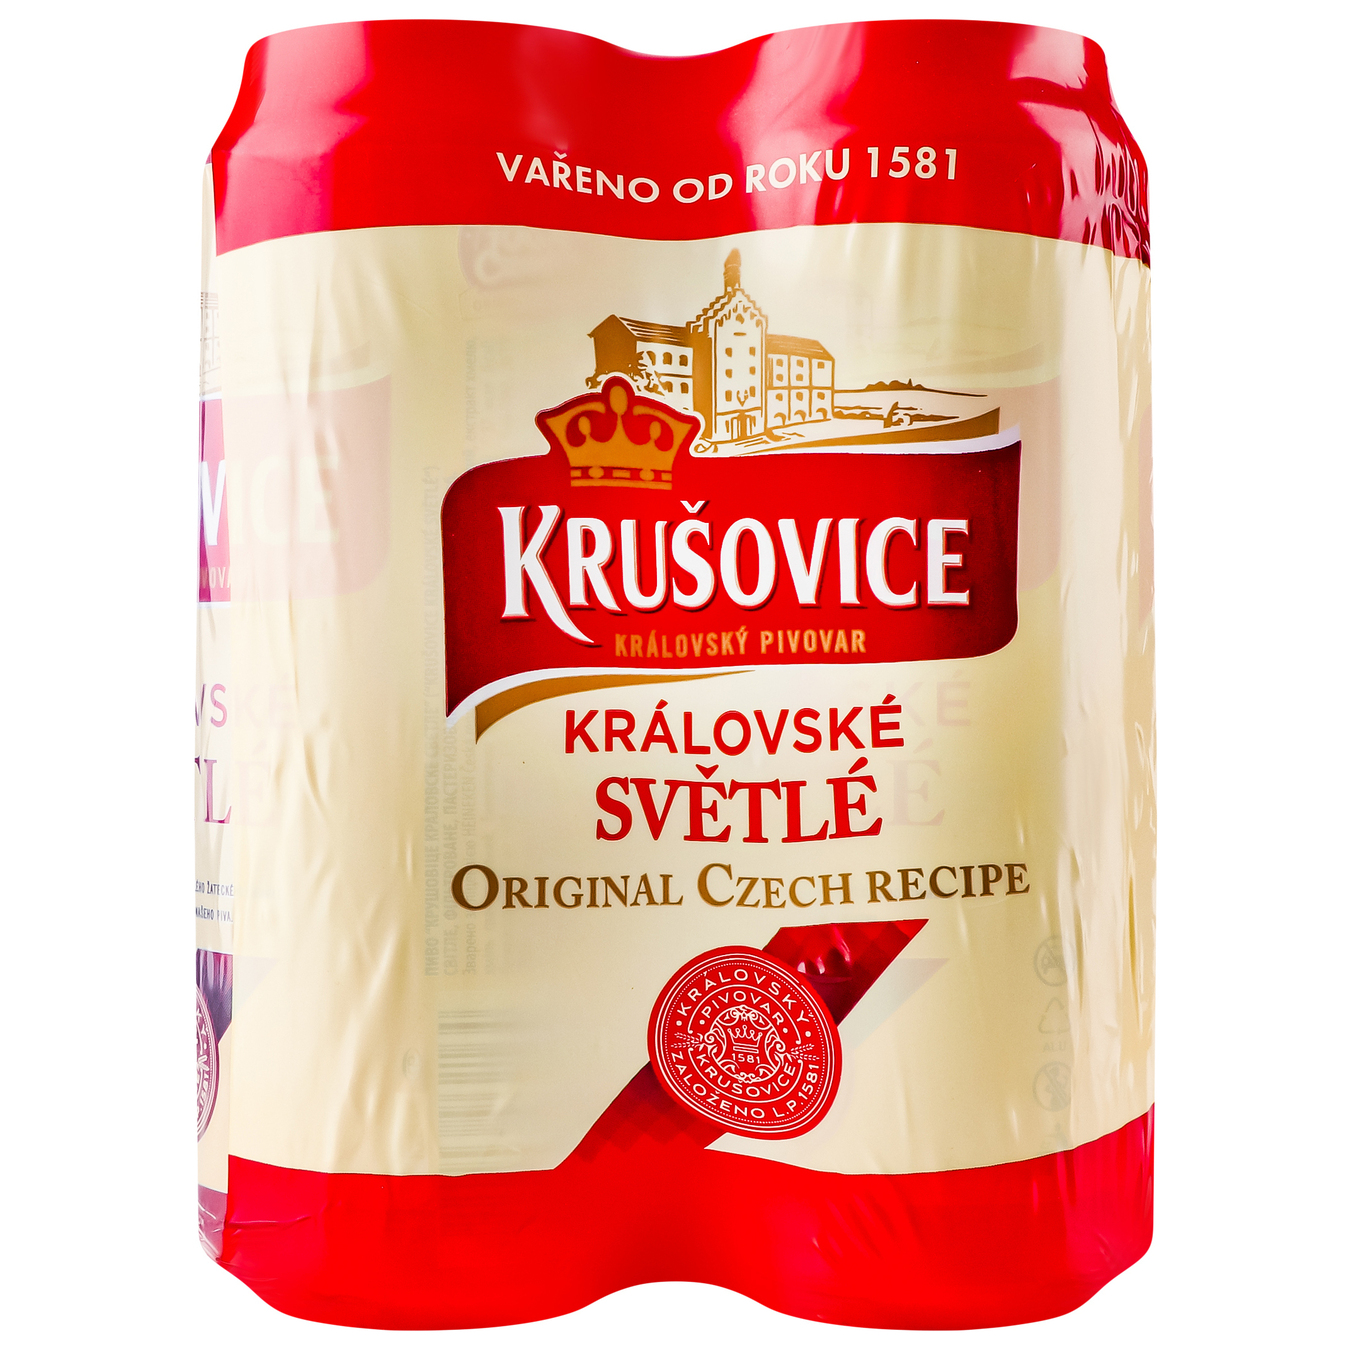 Light beer Krusovice Kralovske 4.2% 4*0.5 l 3